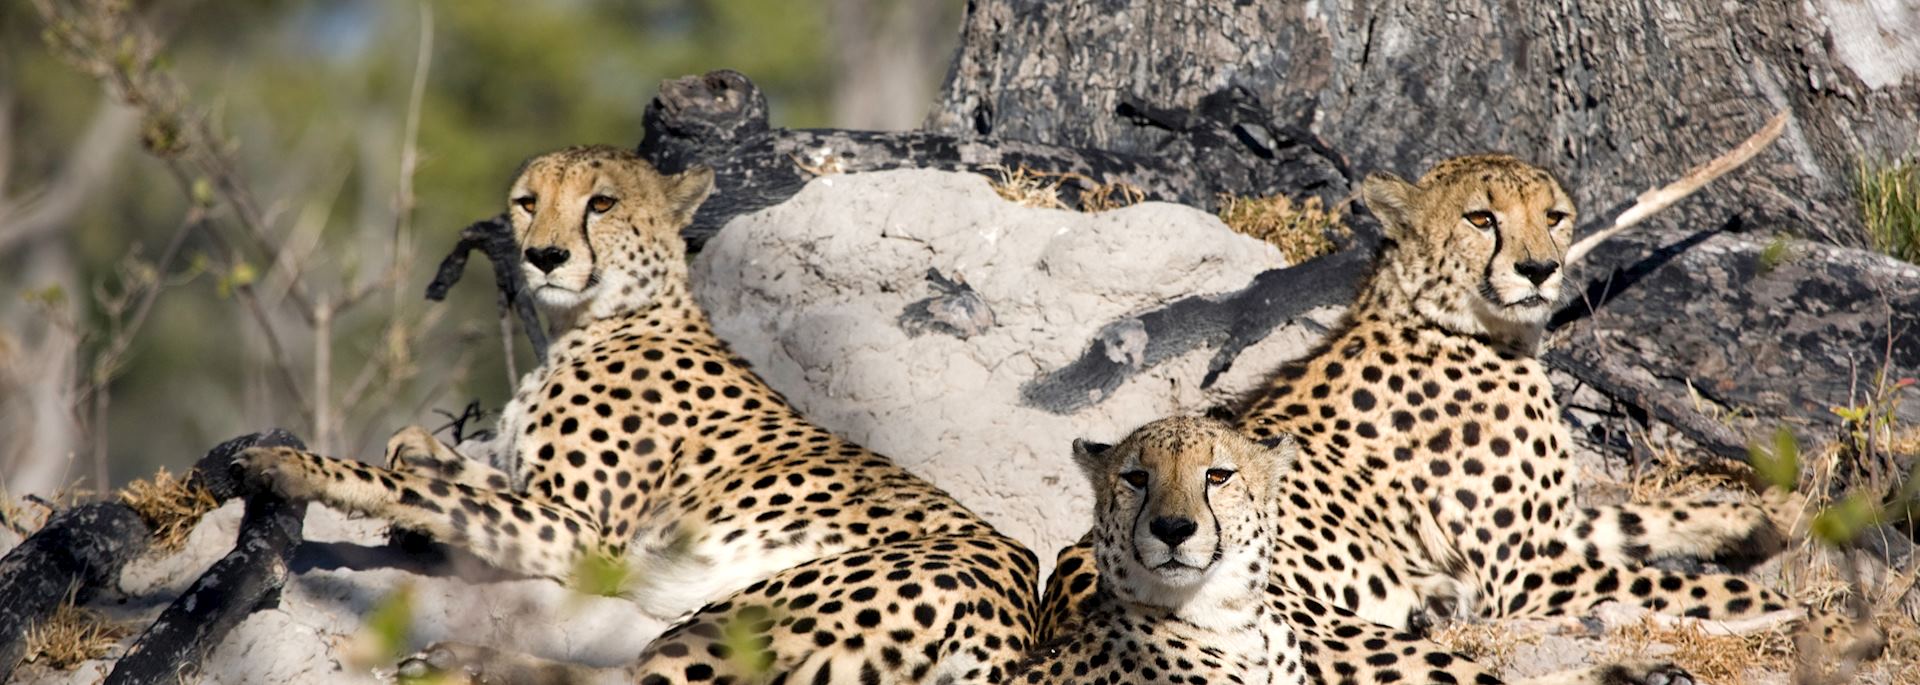 Cheetah at Stanley's Camp, Okavango Delta